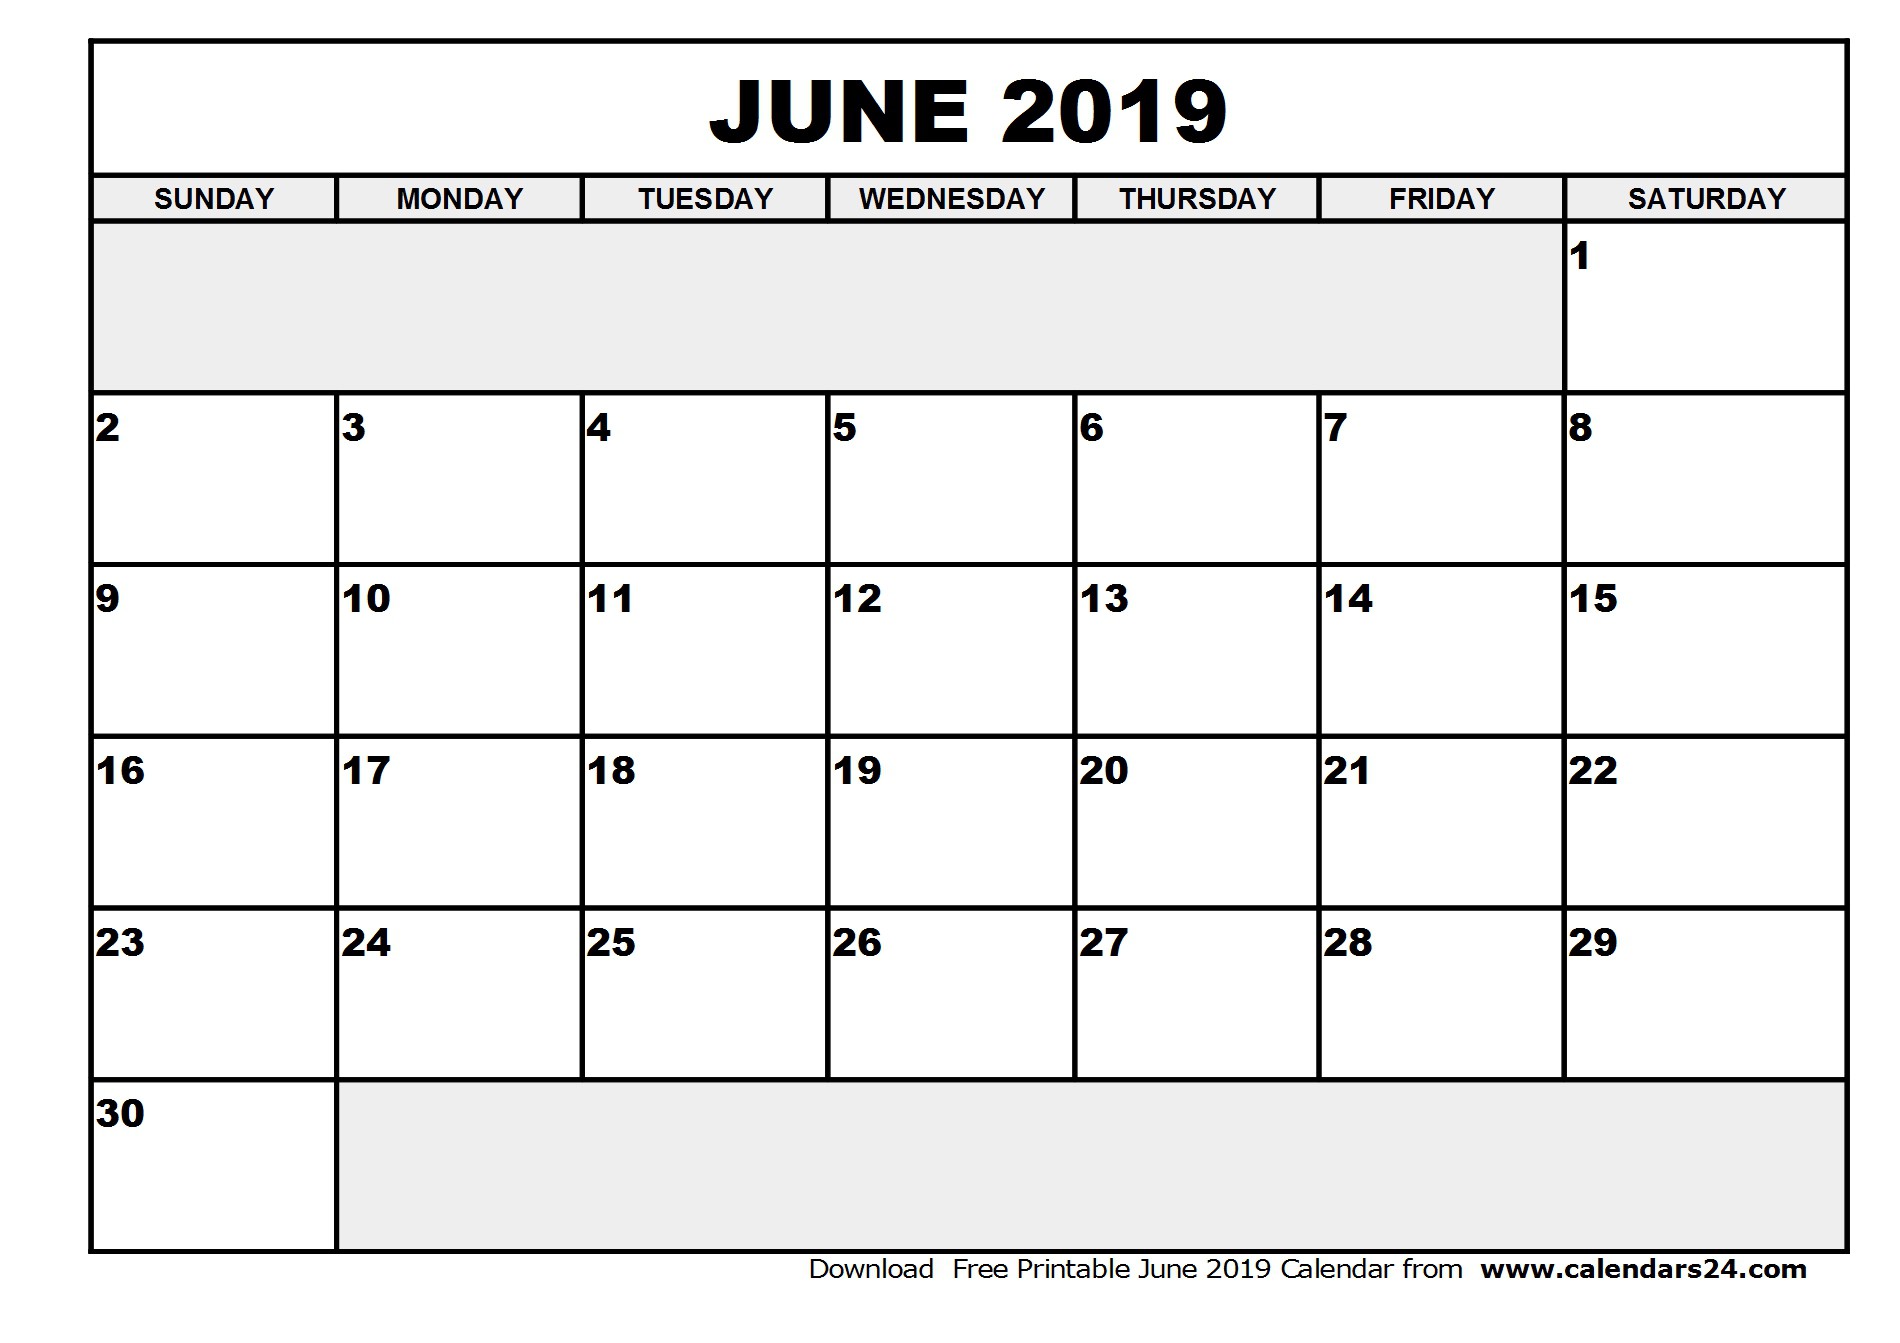 June 2019 Calendar & July 2019 Calendar